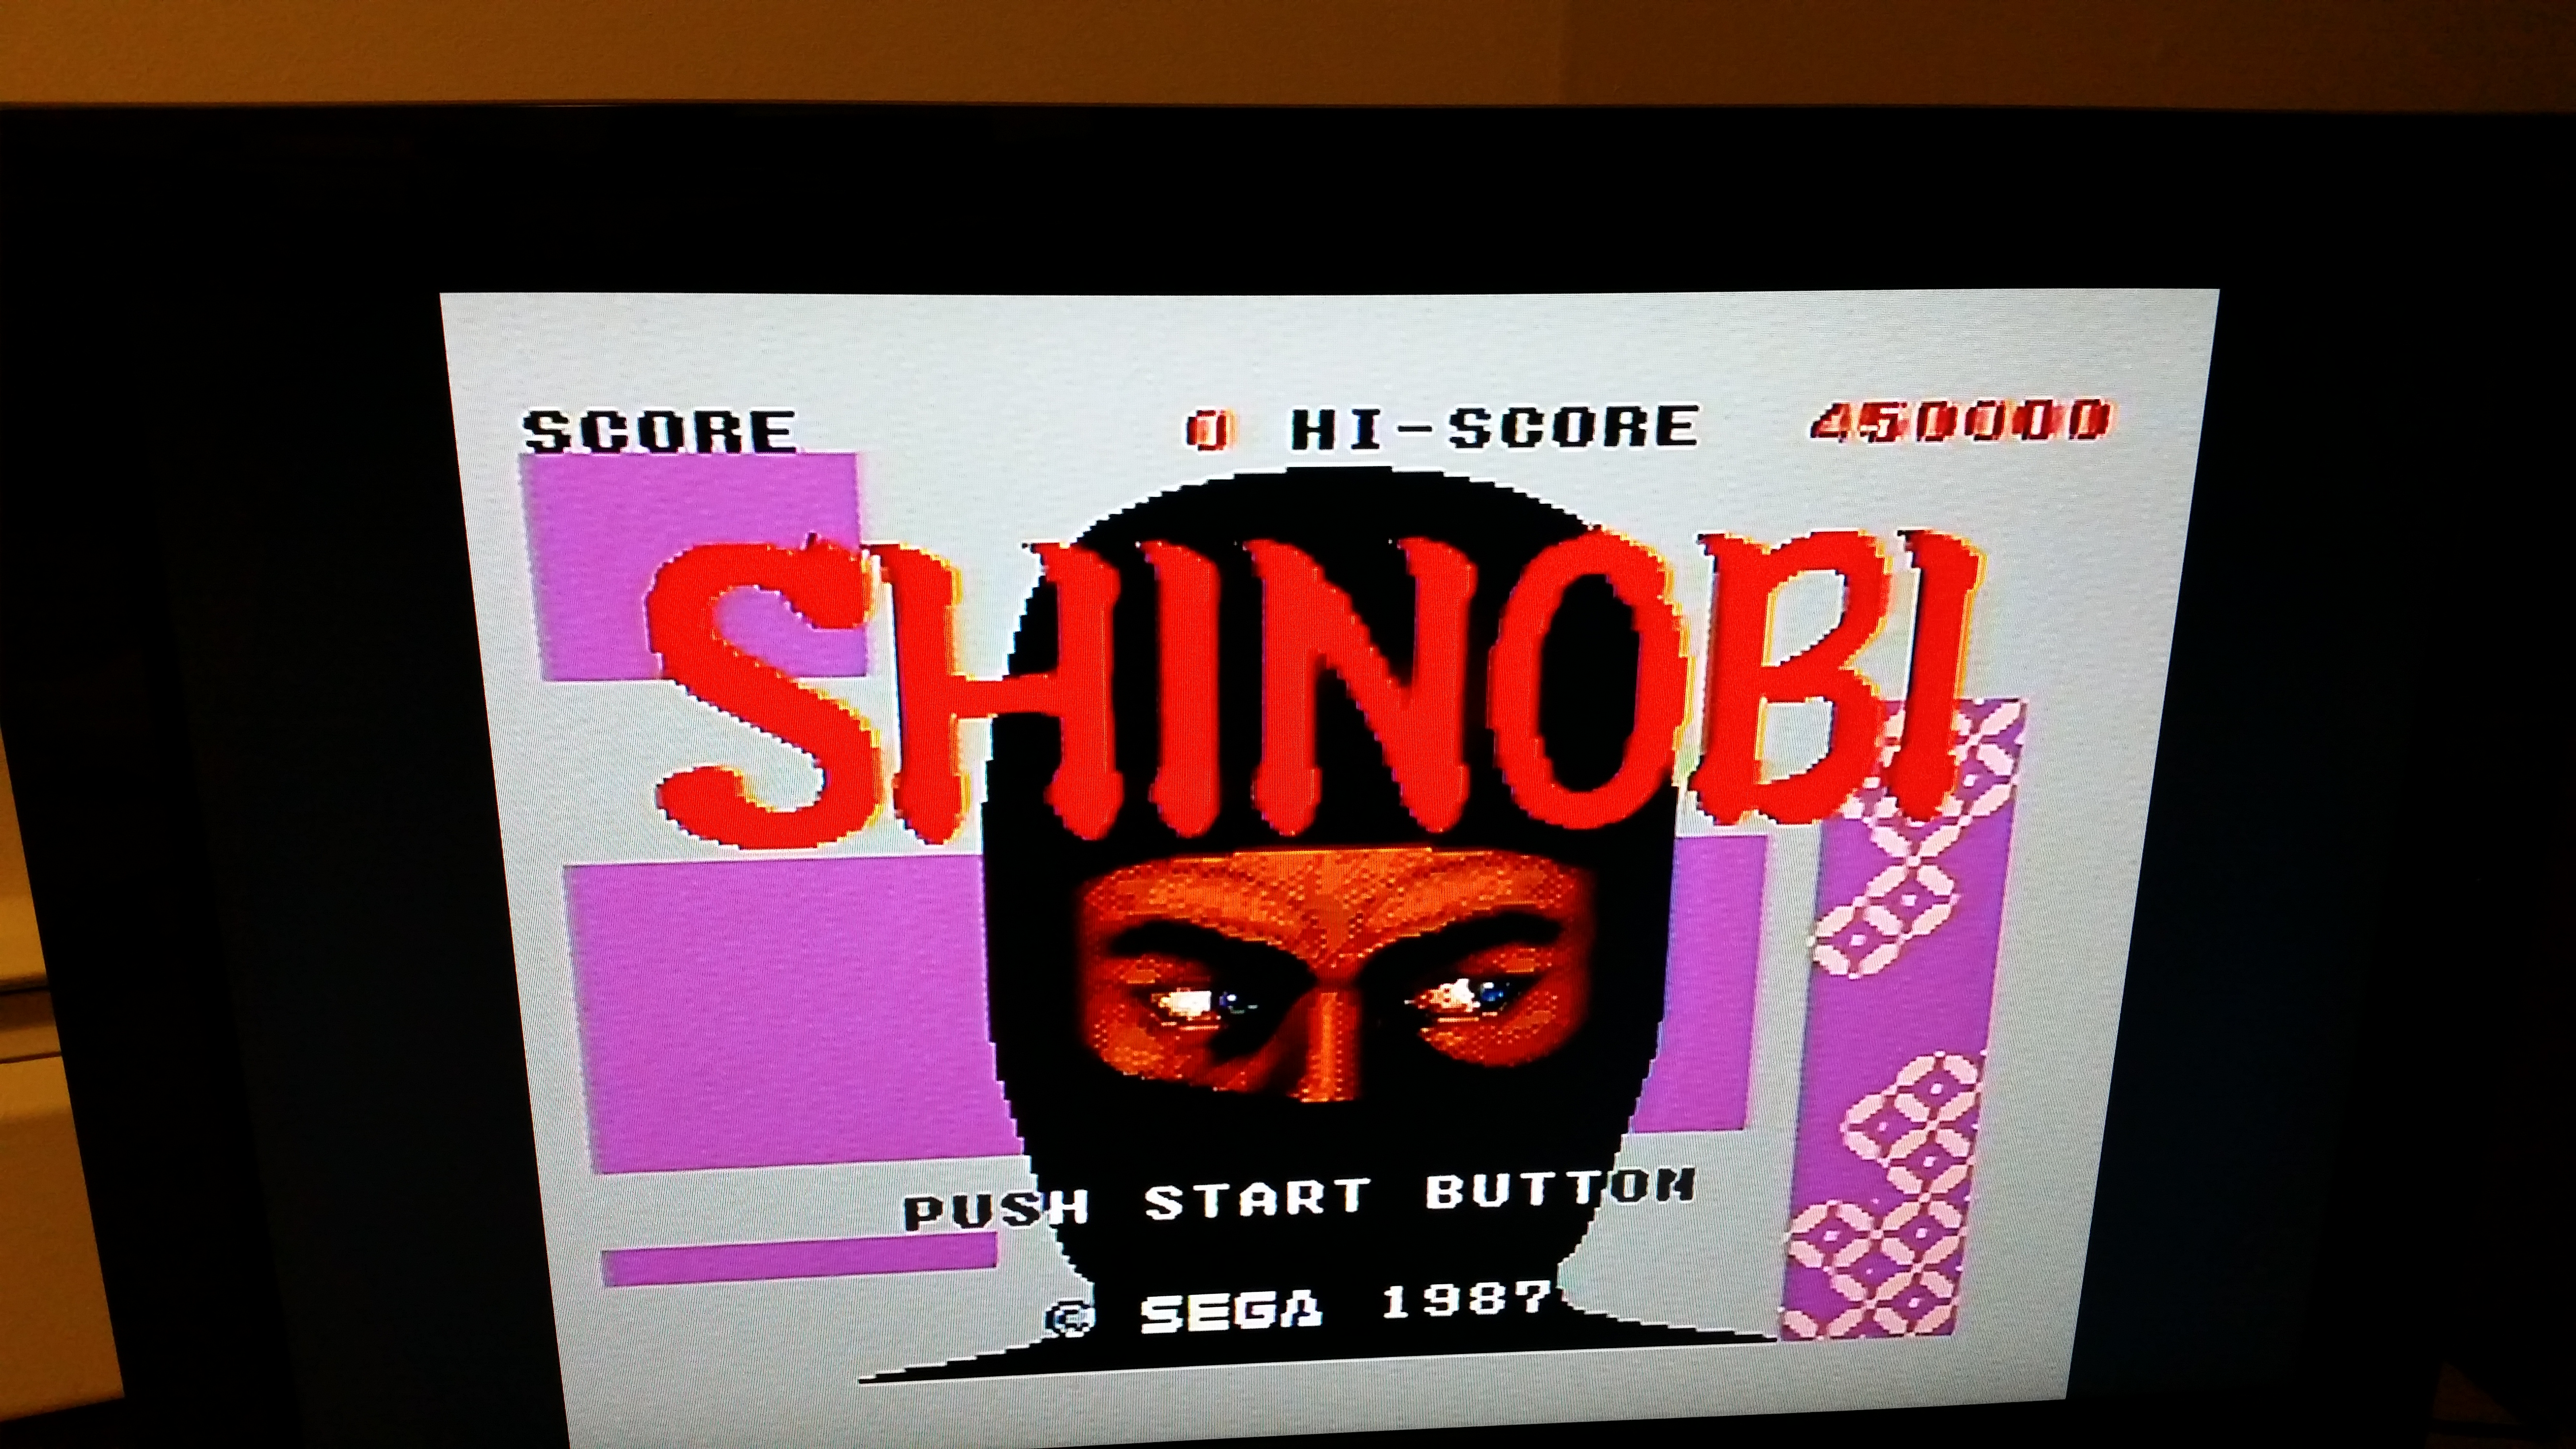 Shinobi 450,000 points